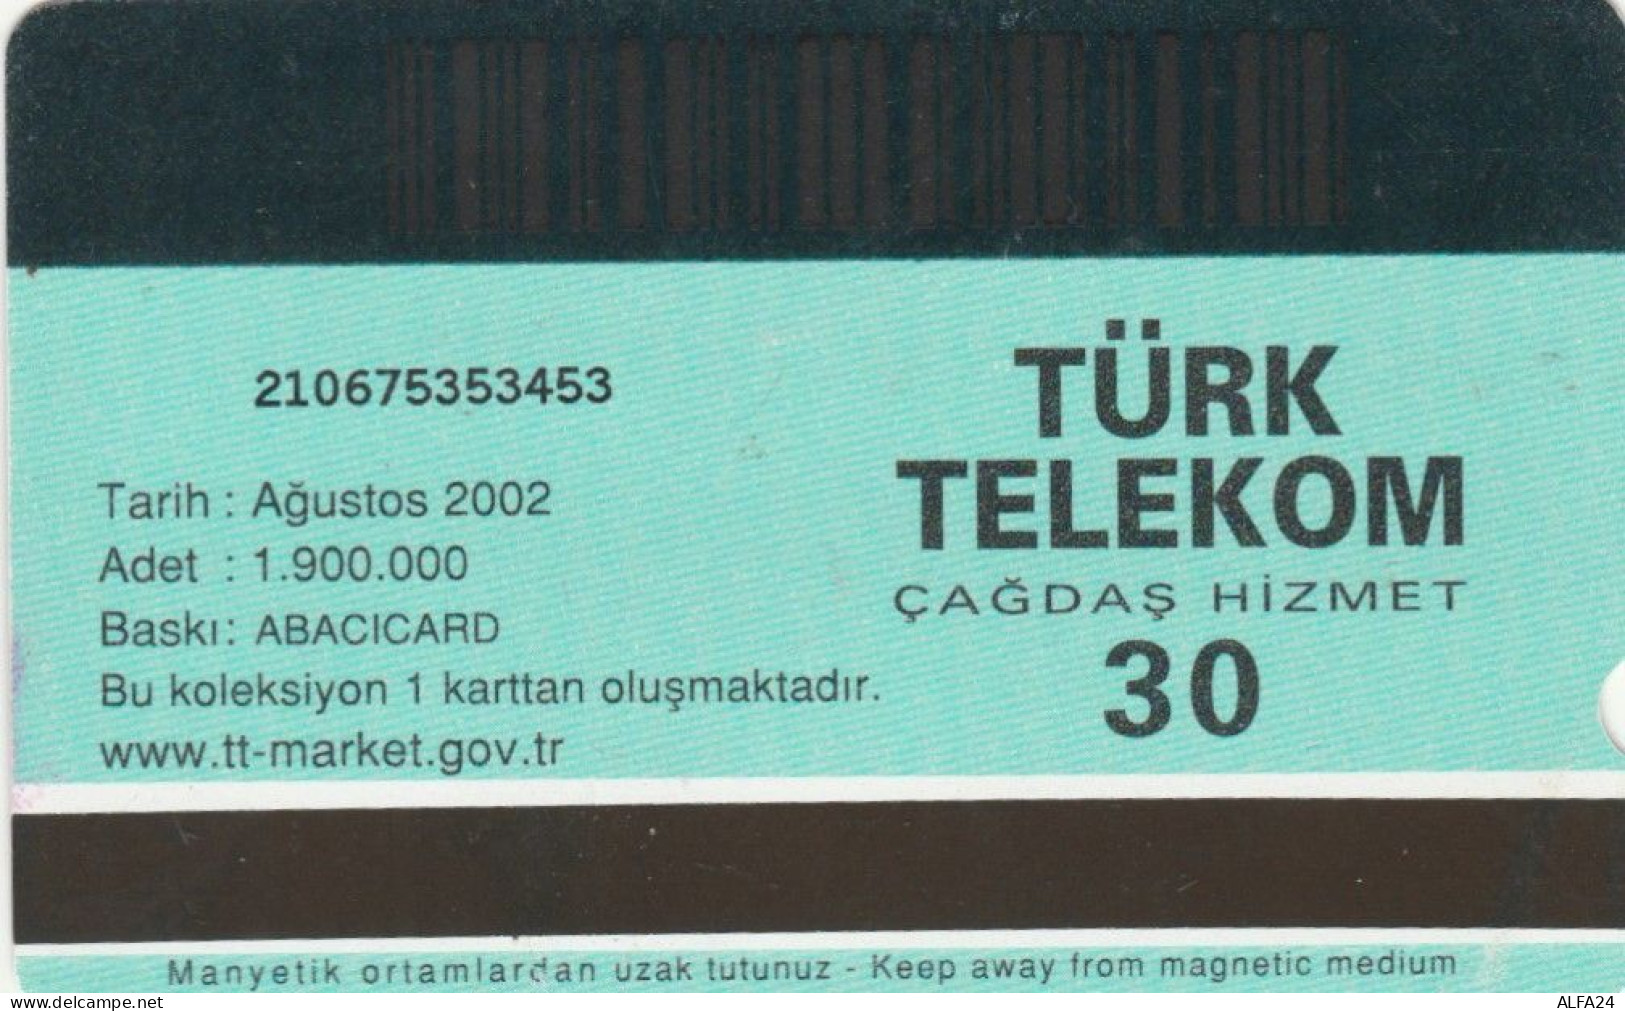 PHONE CARD TURCHIA EUROPA CARD SHOW (E47.8.2 - Turchia